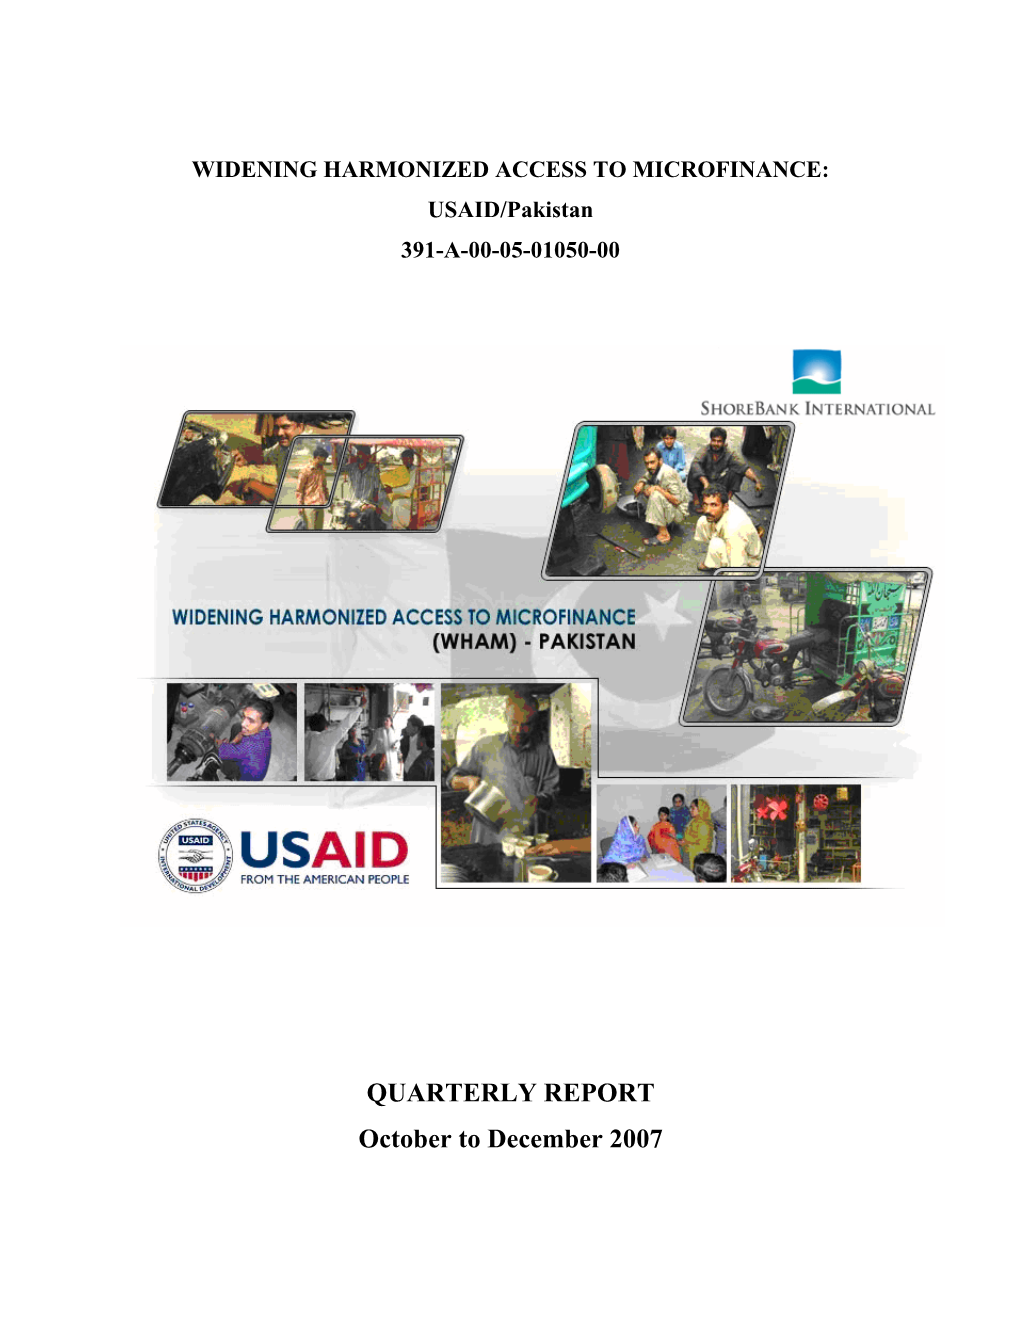 QUARTERLY REPORT October to December 2007 WHAM Quarterly Report: Oct- Dec 2007